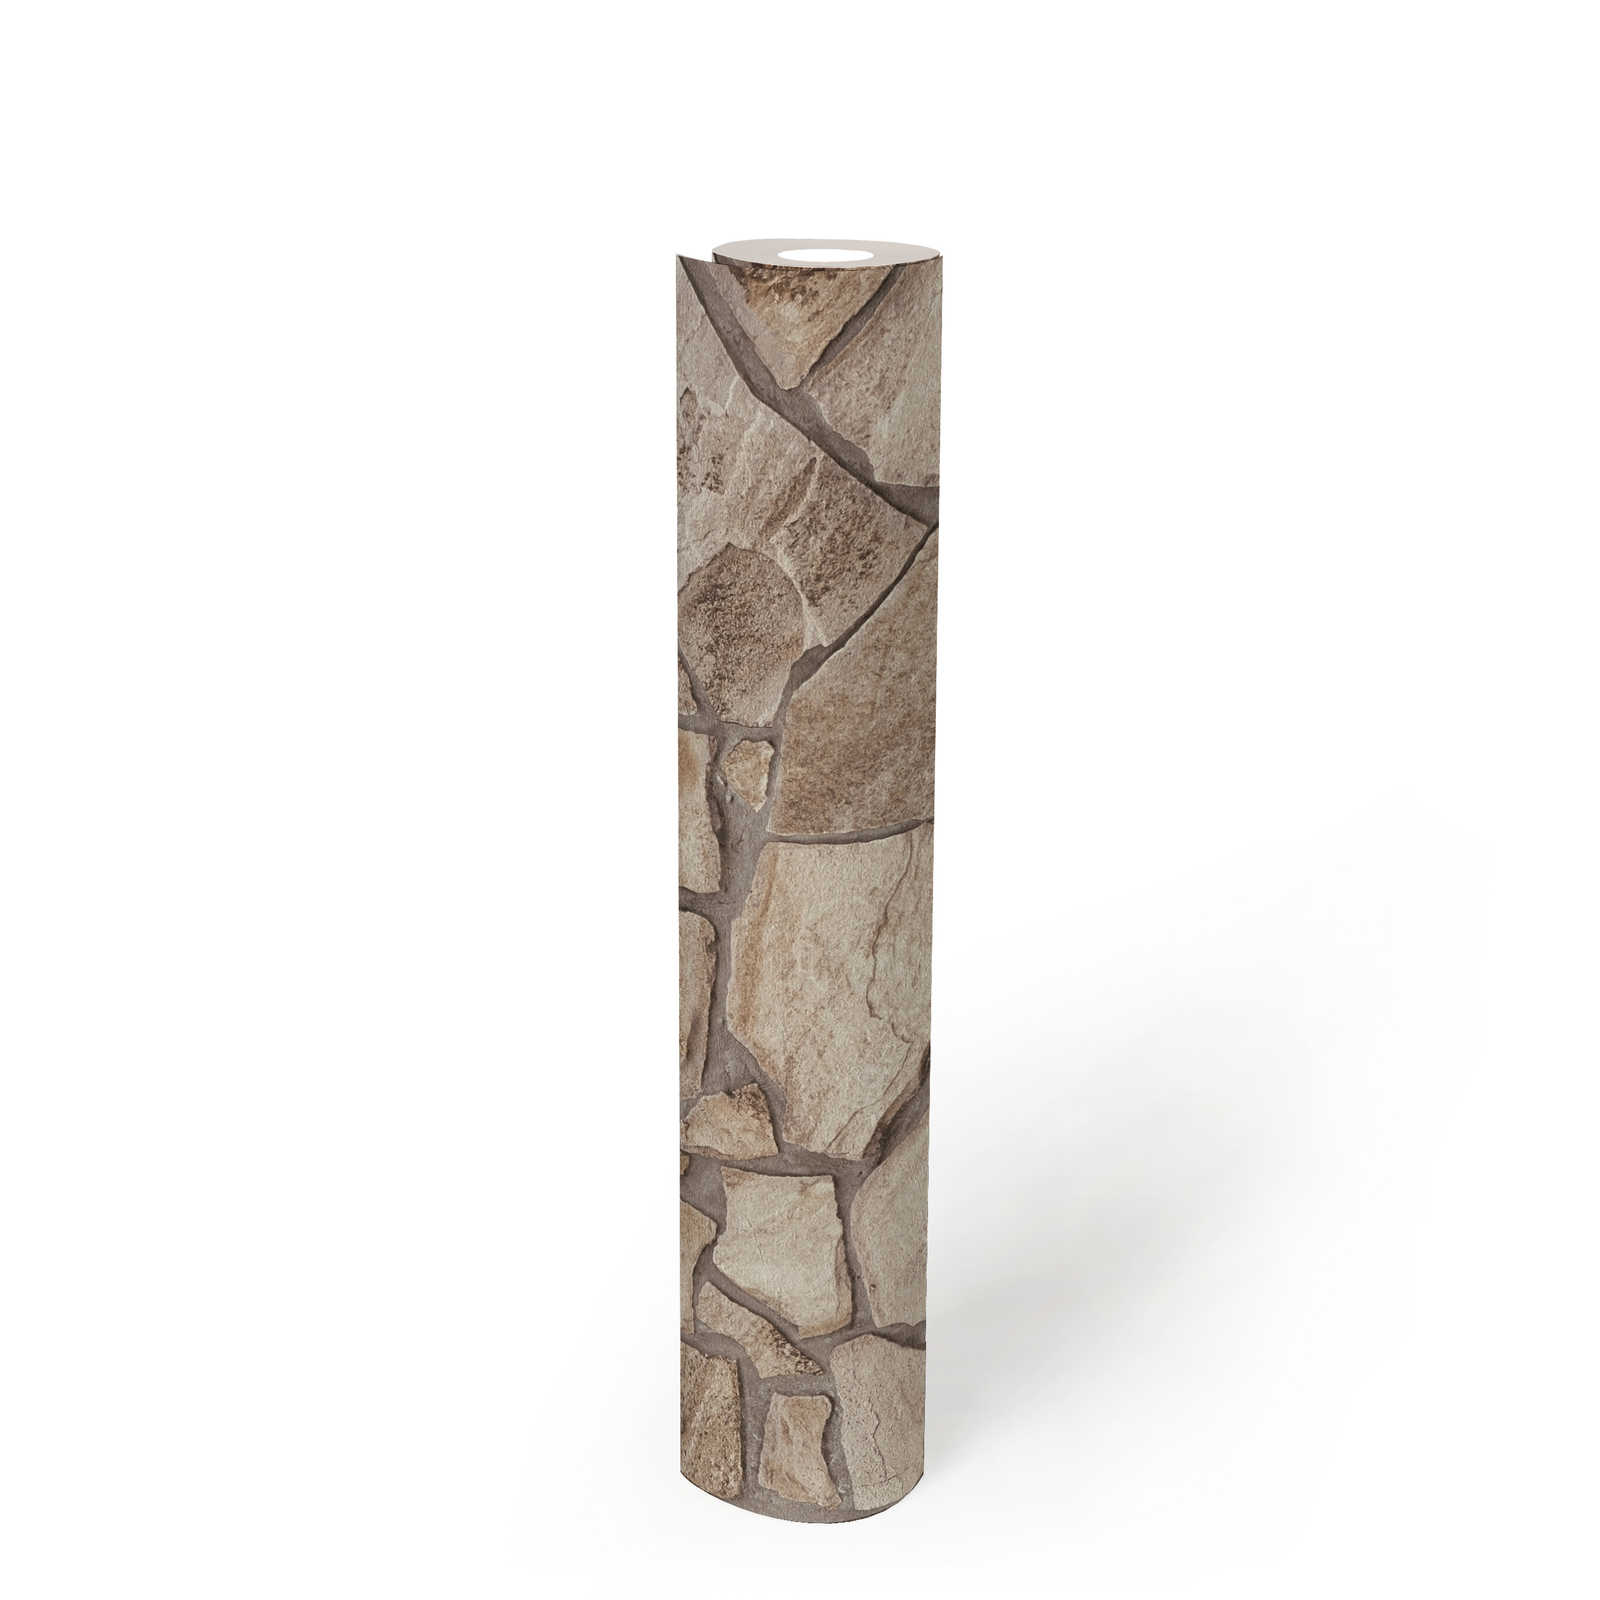             Vliestapete mit Steinoptik Mauer – Braun, Grau, Beige
        